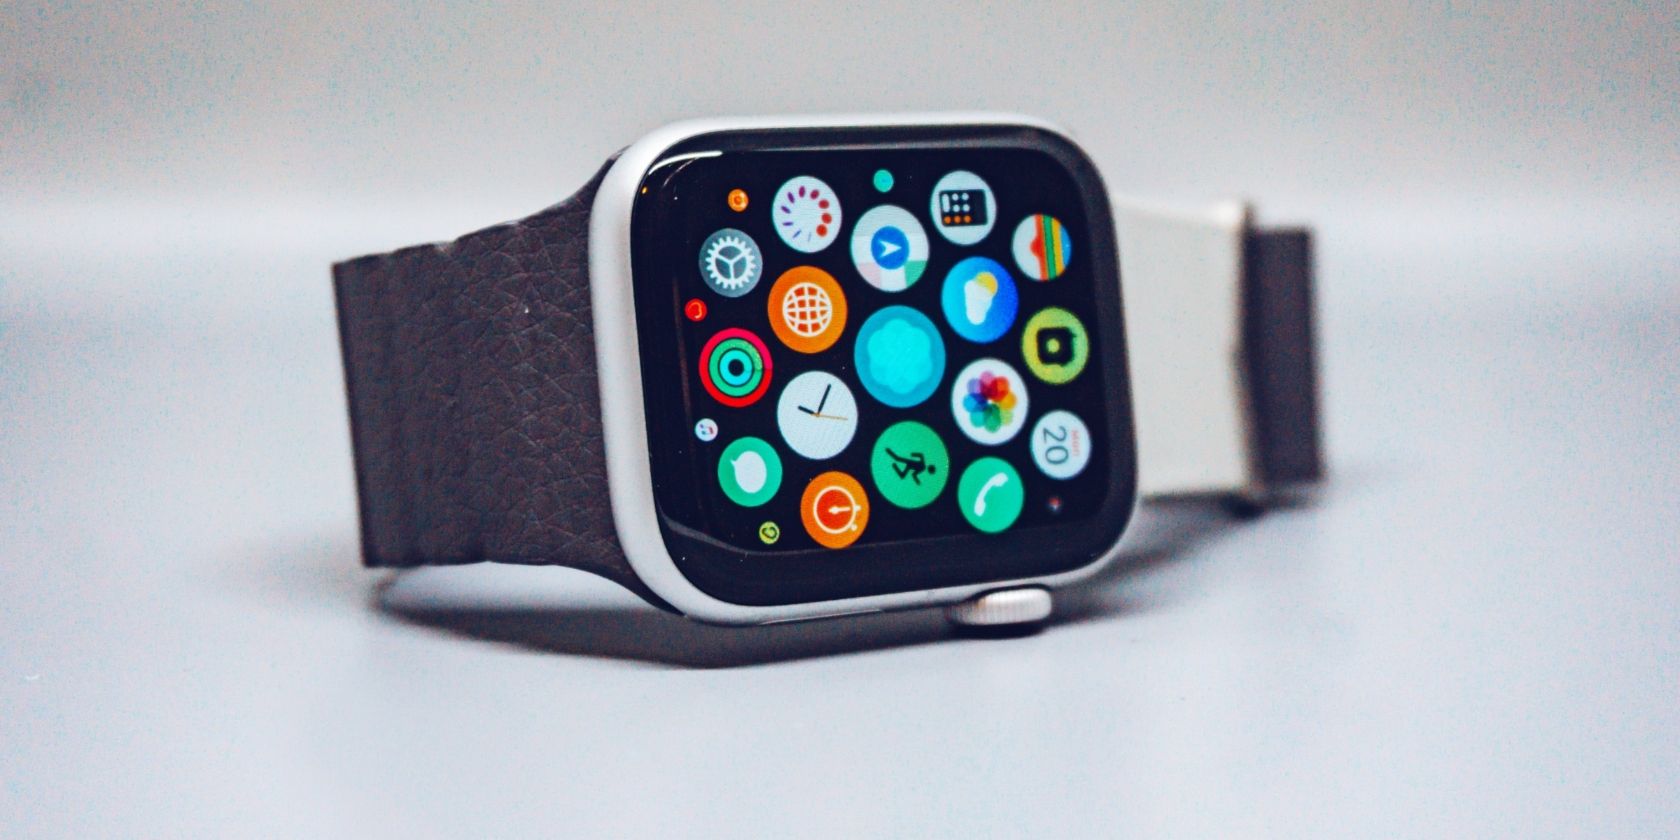 Apple Watch mantido na superfície branca